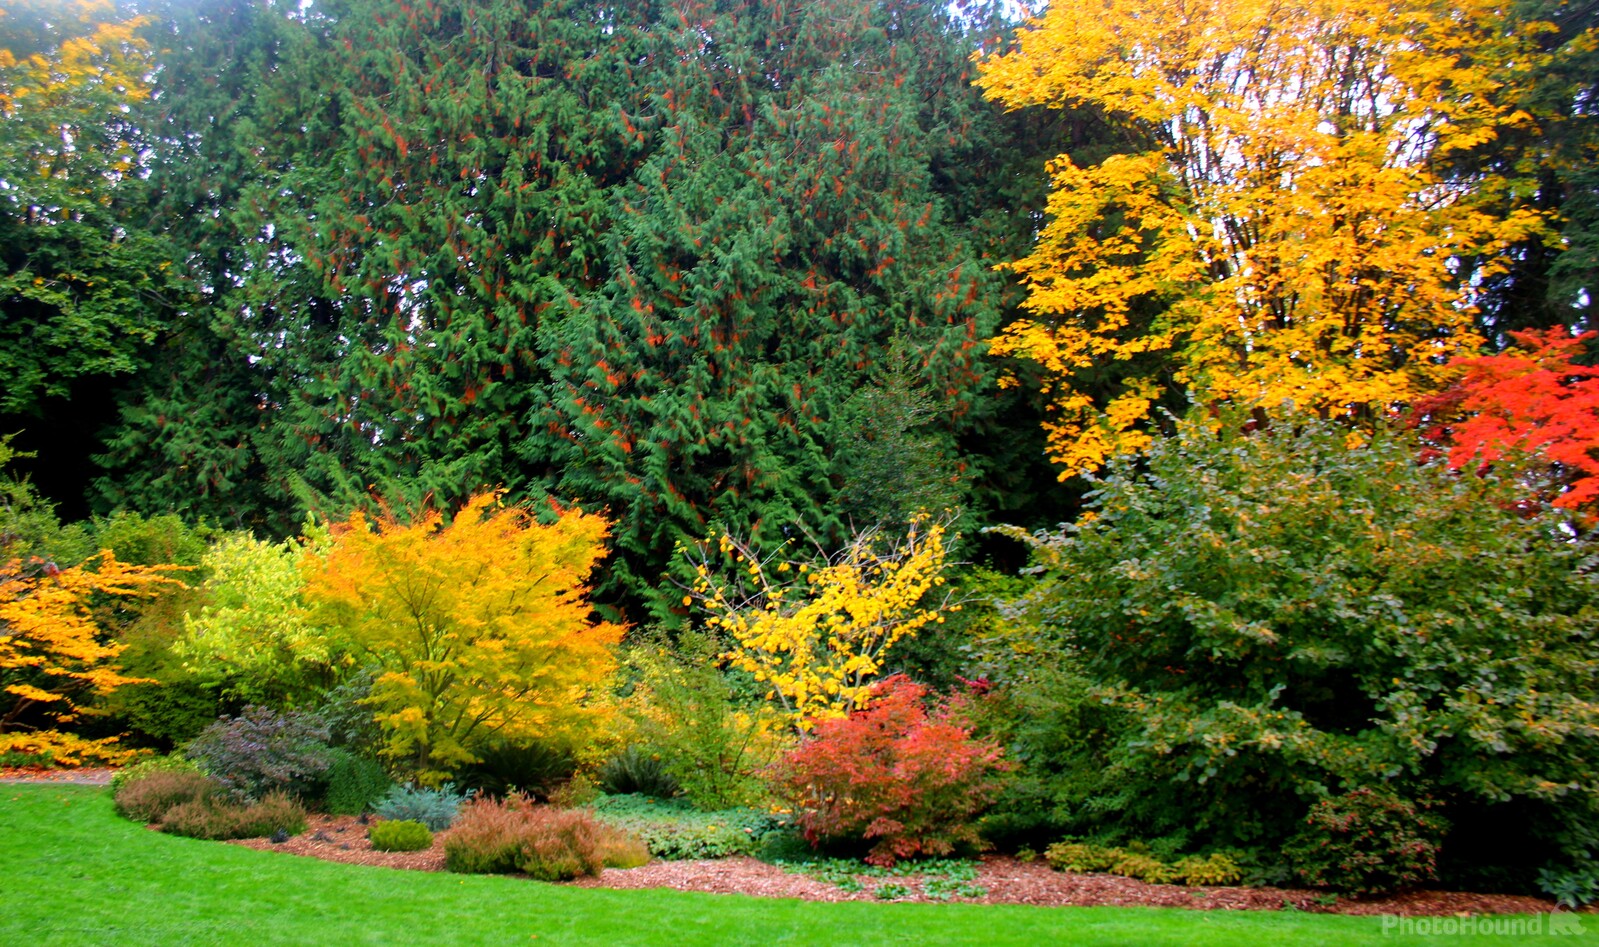 Image of Washington Park Arboretum by Eugene Vig